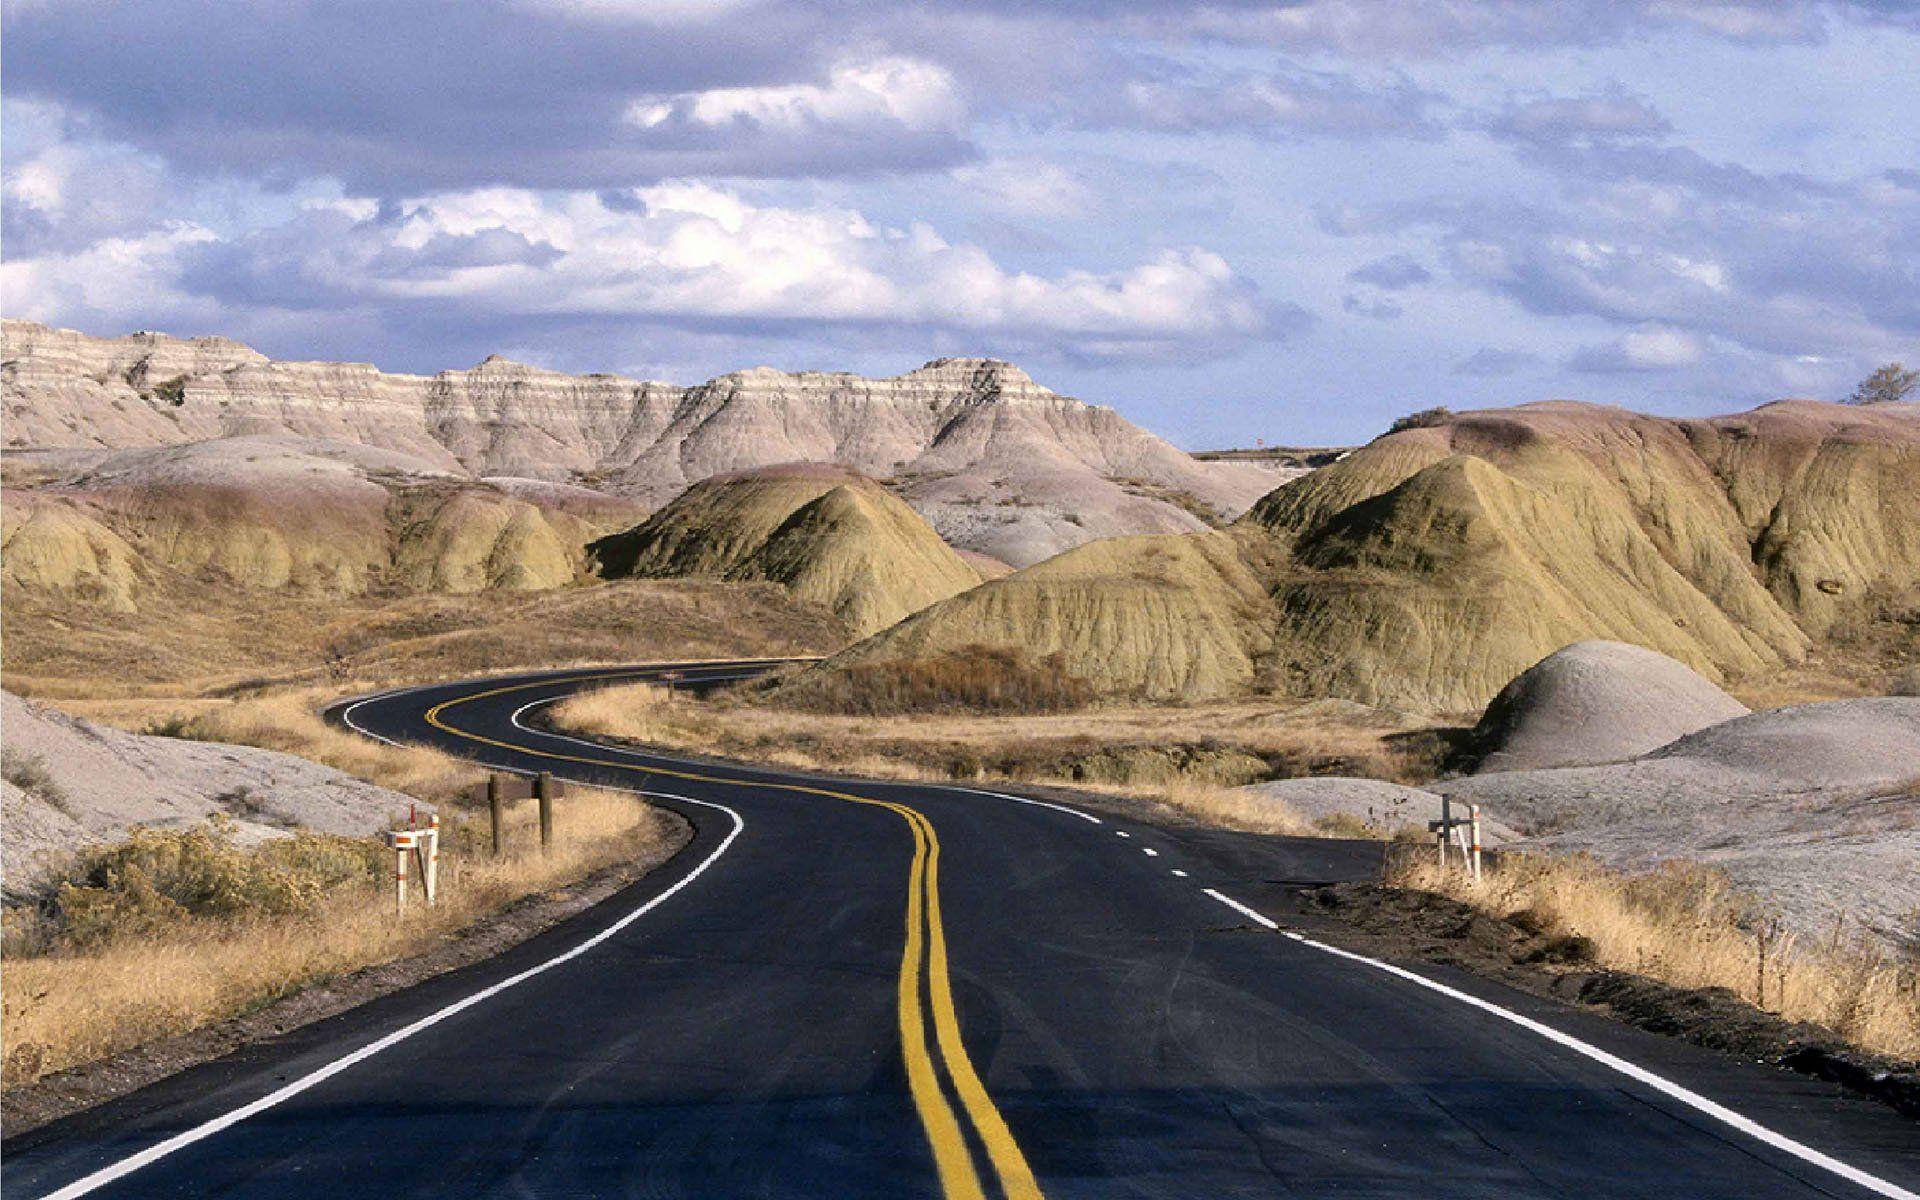 دانلود عکس جاده در پارک ملی بدلندز با کیفیت بالا